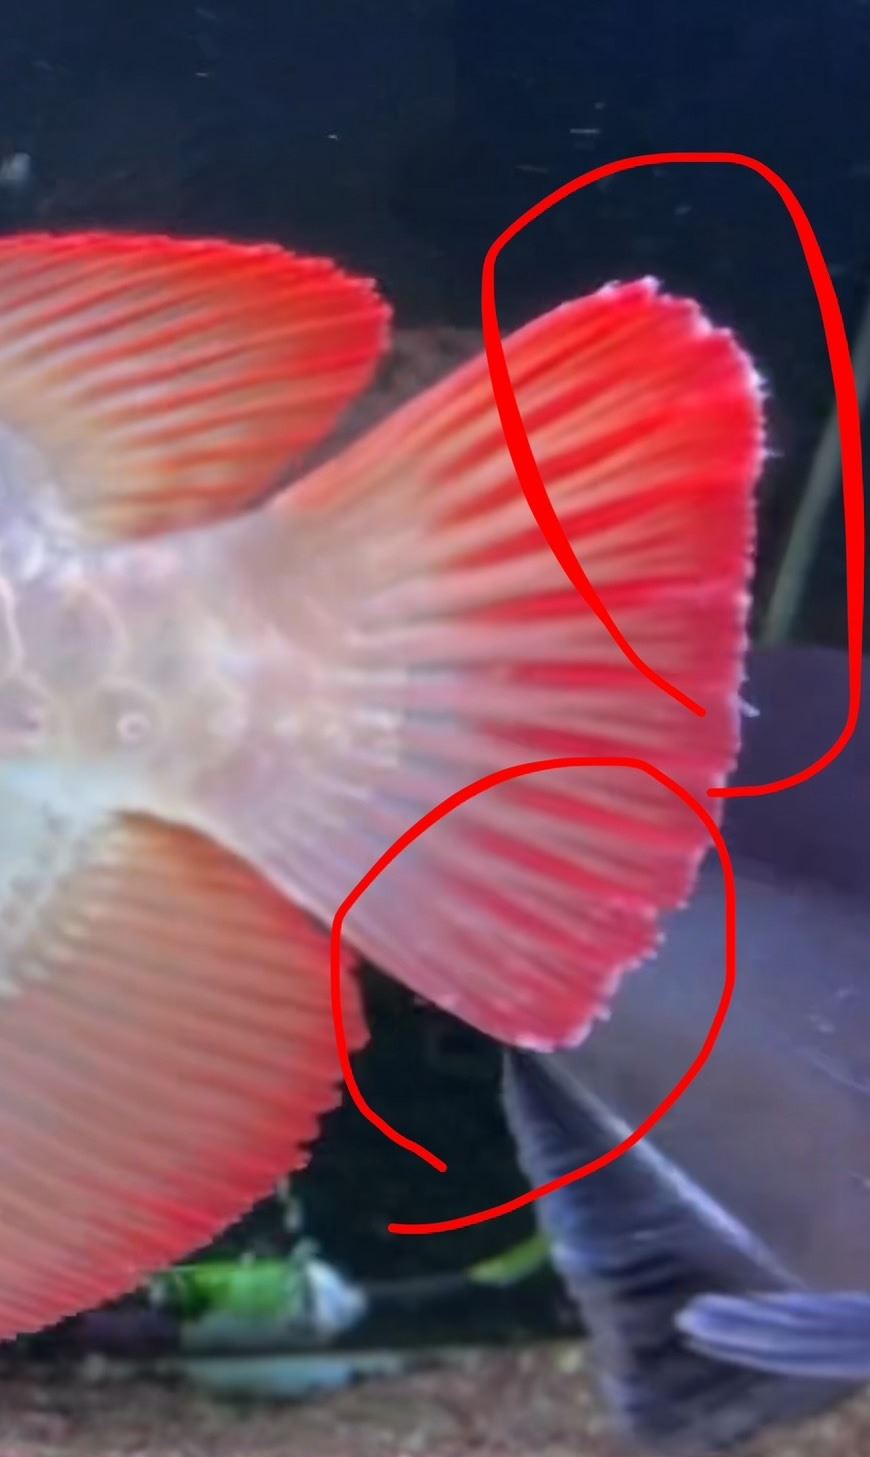 請問龍魚尾鰭有白點與絲狀物，該如何處理？由什麼造成的？